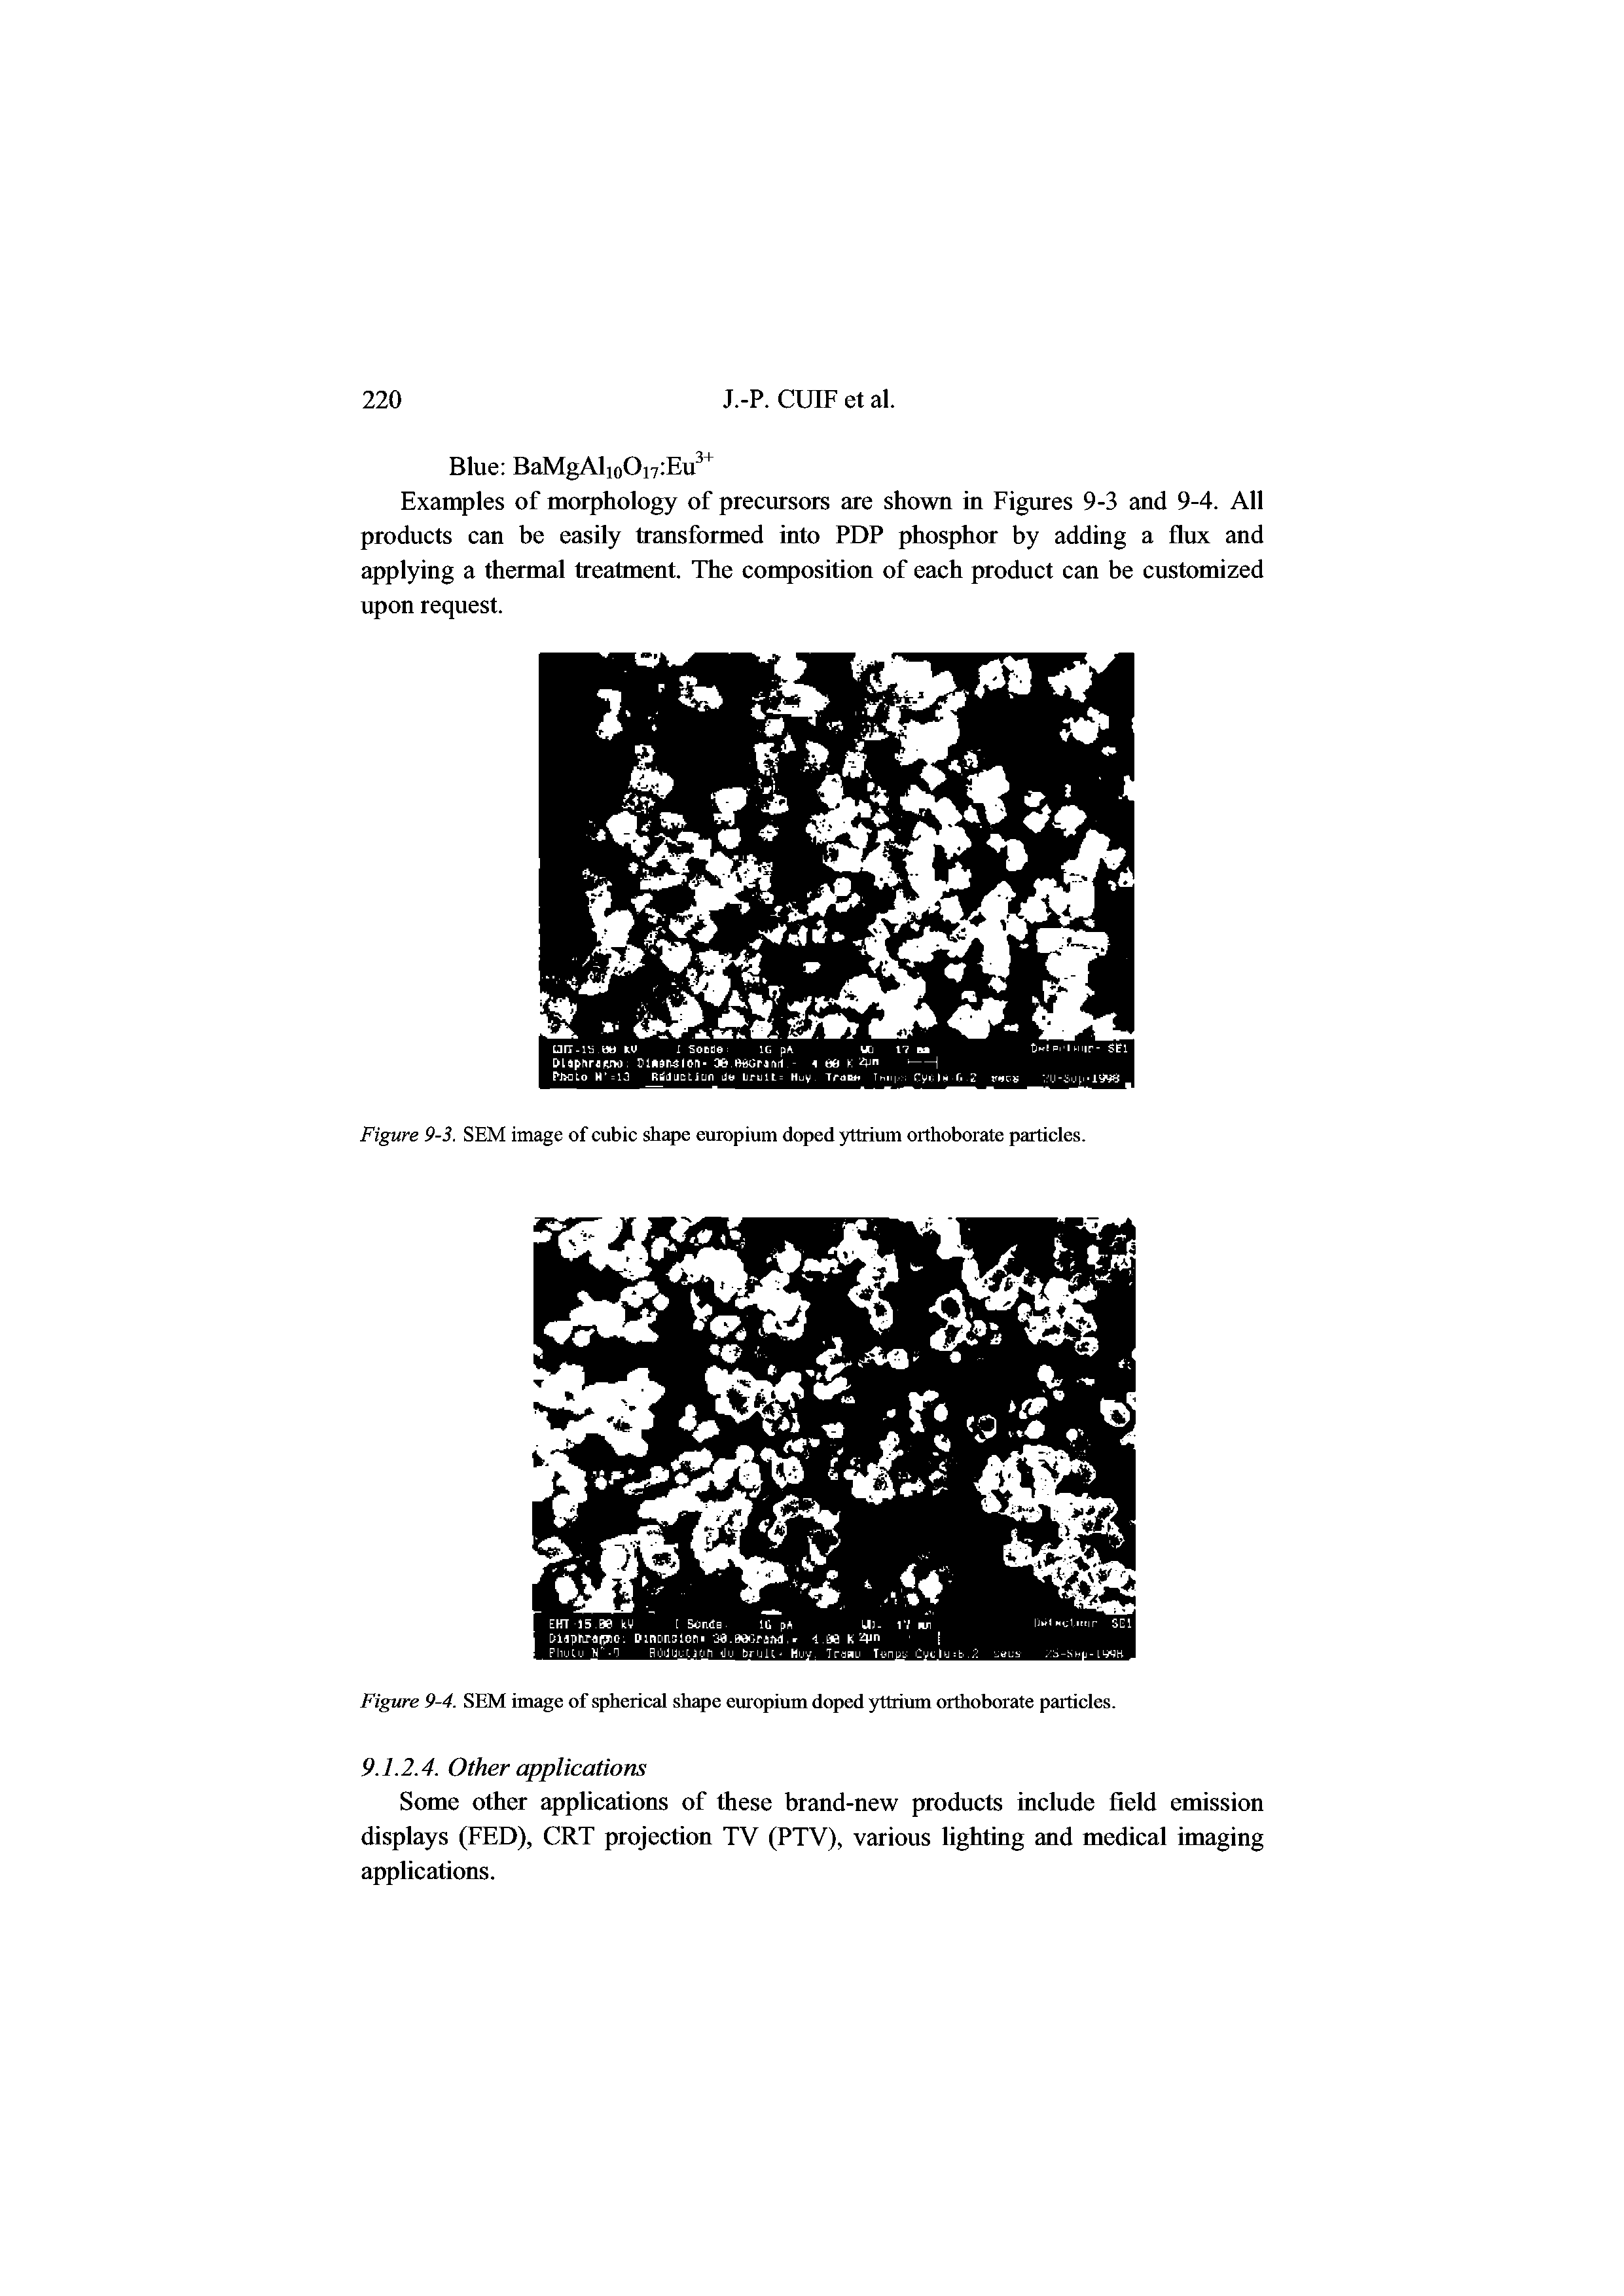 Figure 9-3. SEM image of cubic shape europium doped yttrium orthoborate particles.